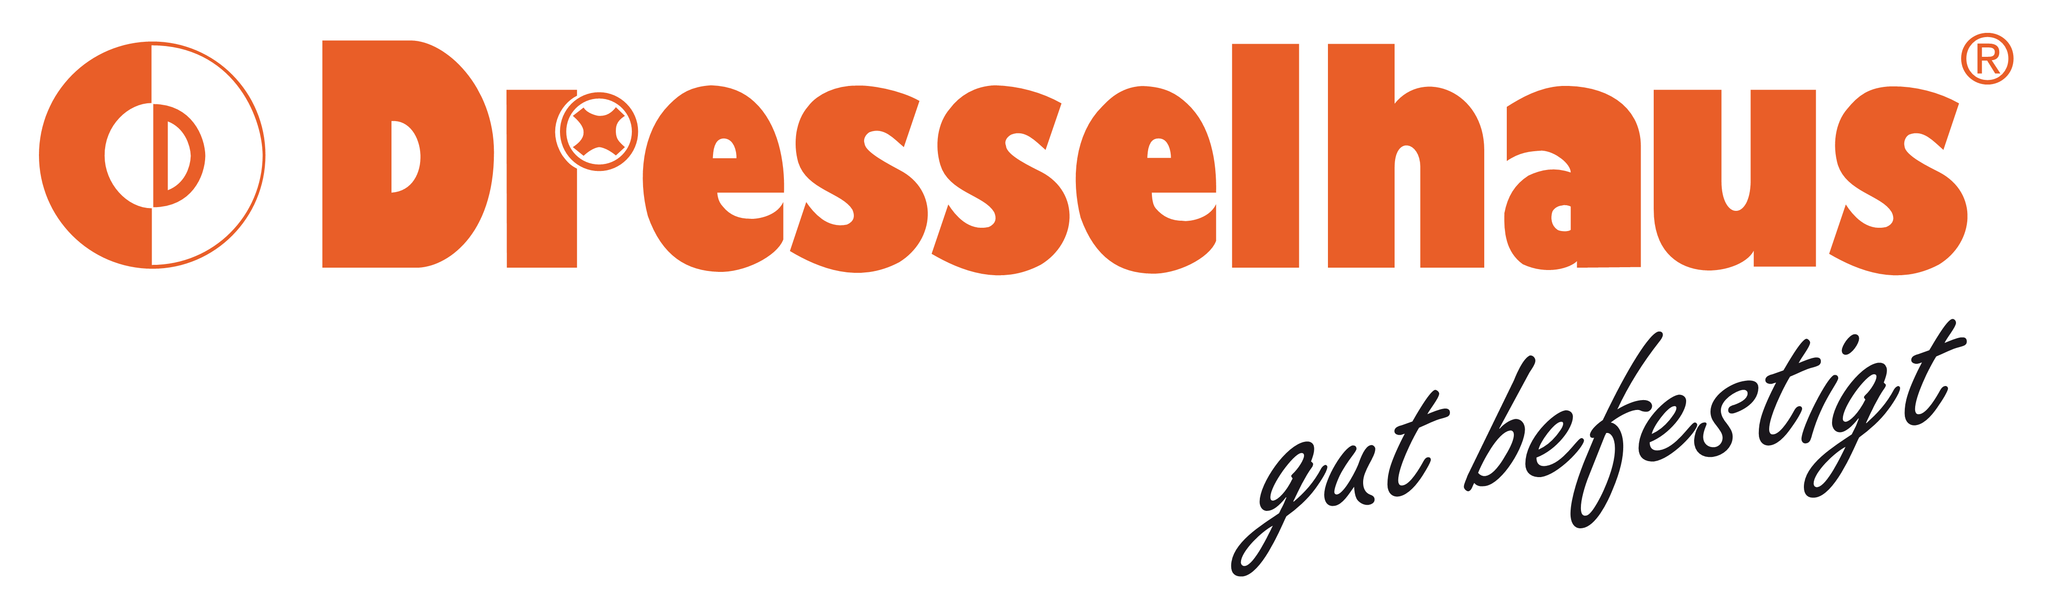 Dresselhaus logo